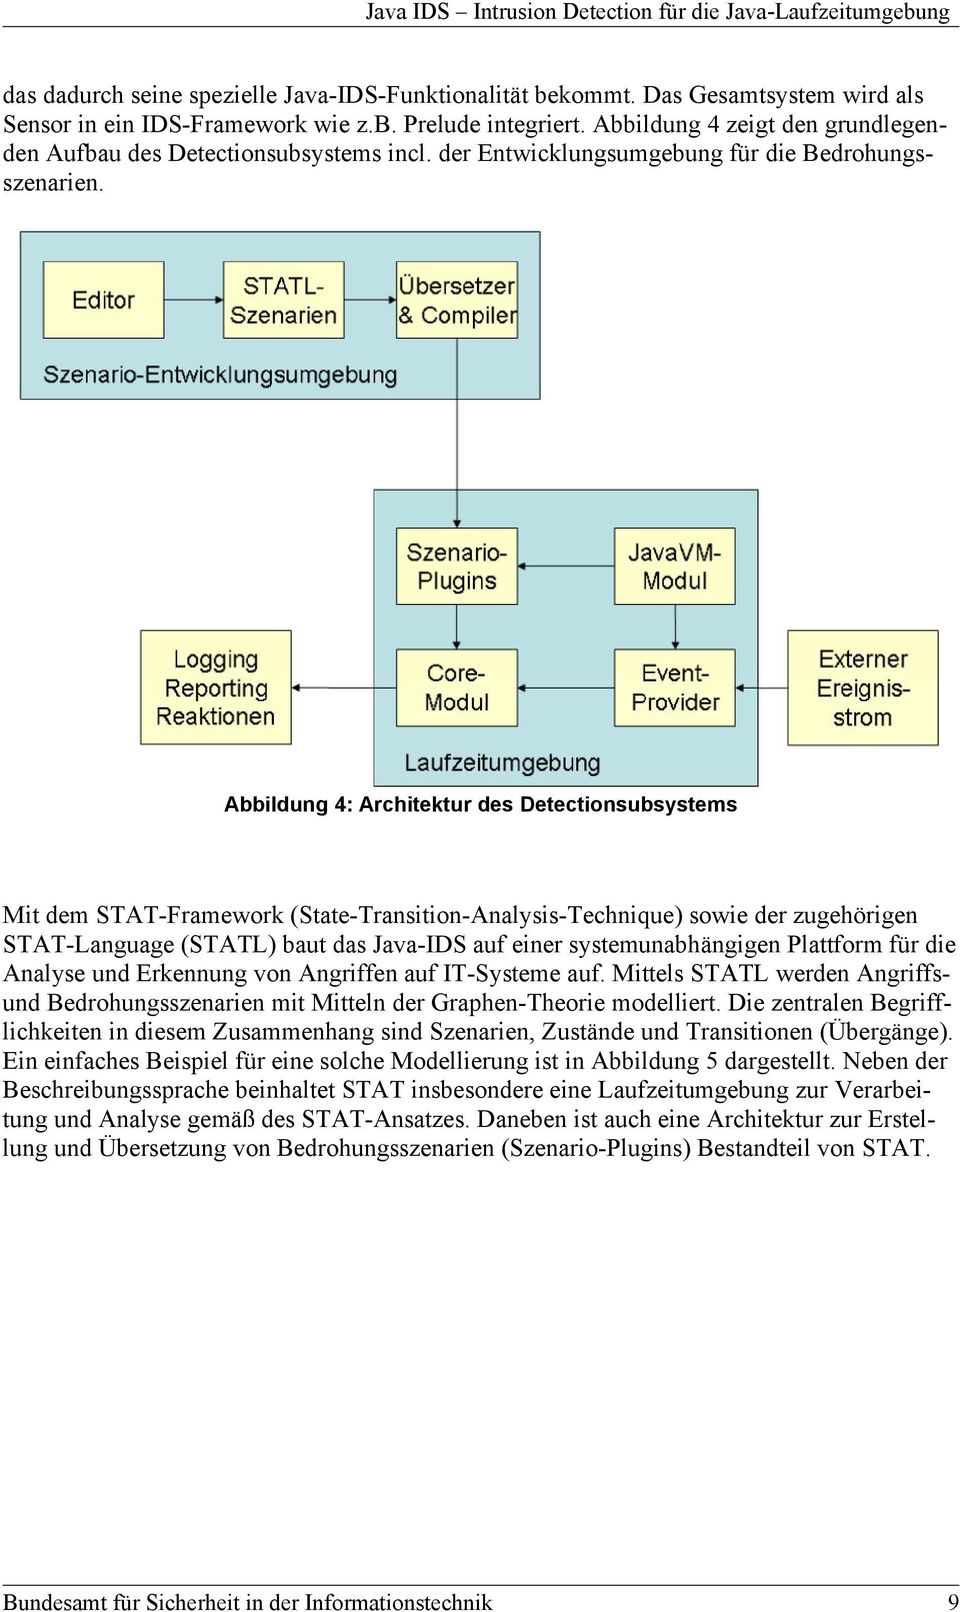 Abbildung 4: Architektur des Detectionsubsystems Mit dem STAT-Framework (State-Transition-Analysis-Technique) sowie der zugehörigen STAT-Language (STATL) baut das Java-IDS auf einer